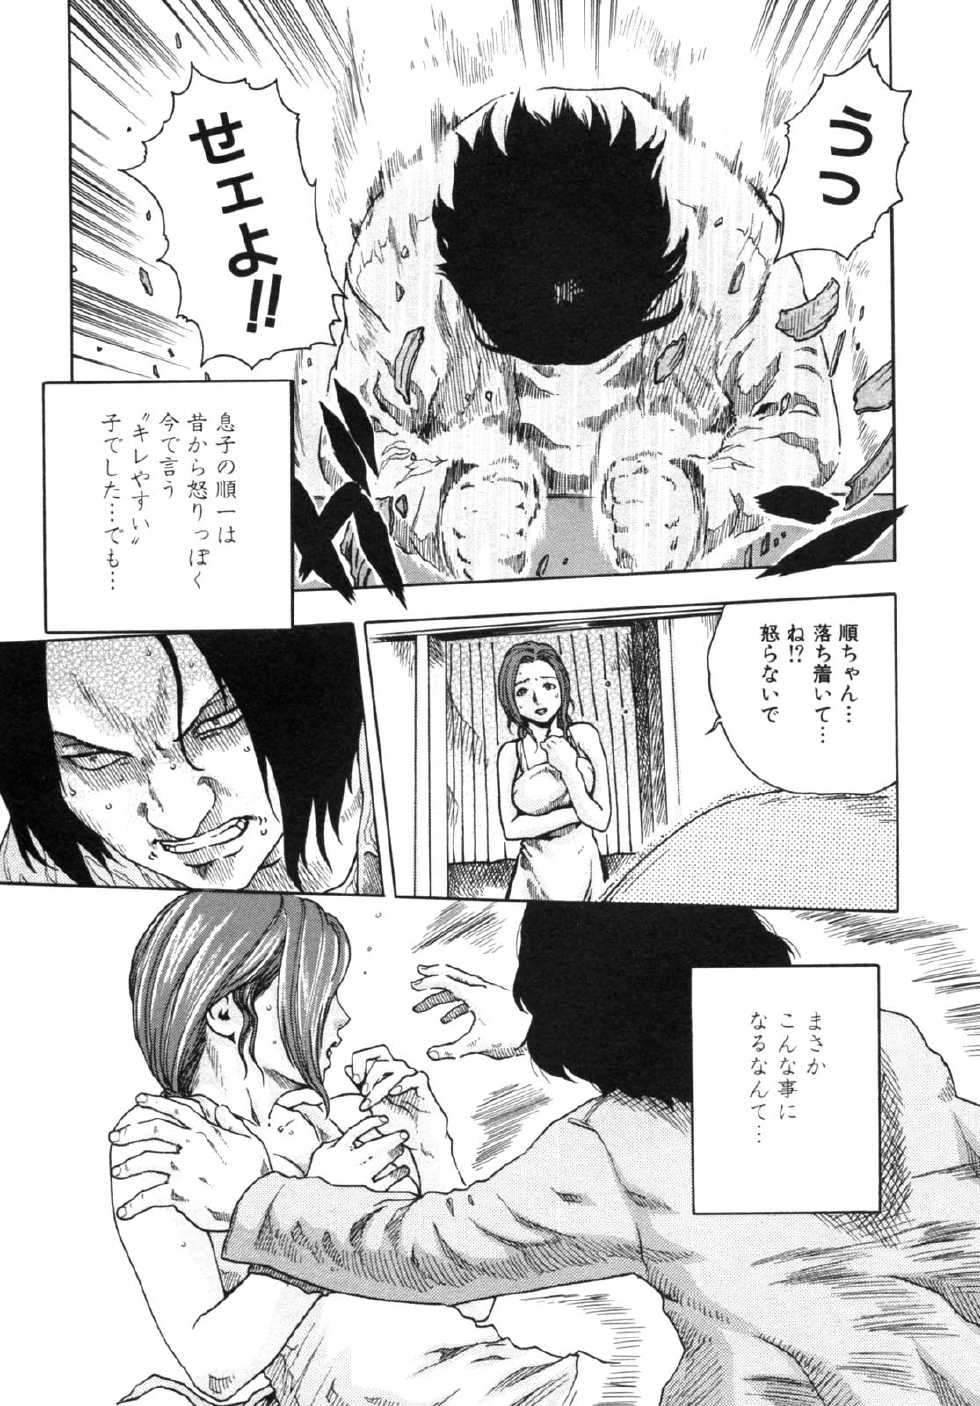 [Anthology] Haitokubana - Immoral Flower Vol. 2 - Page 27